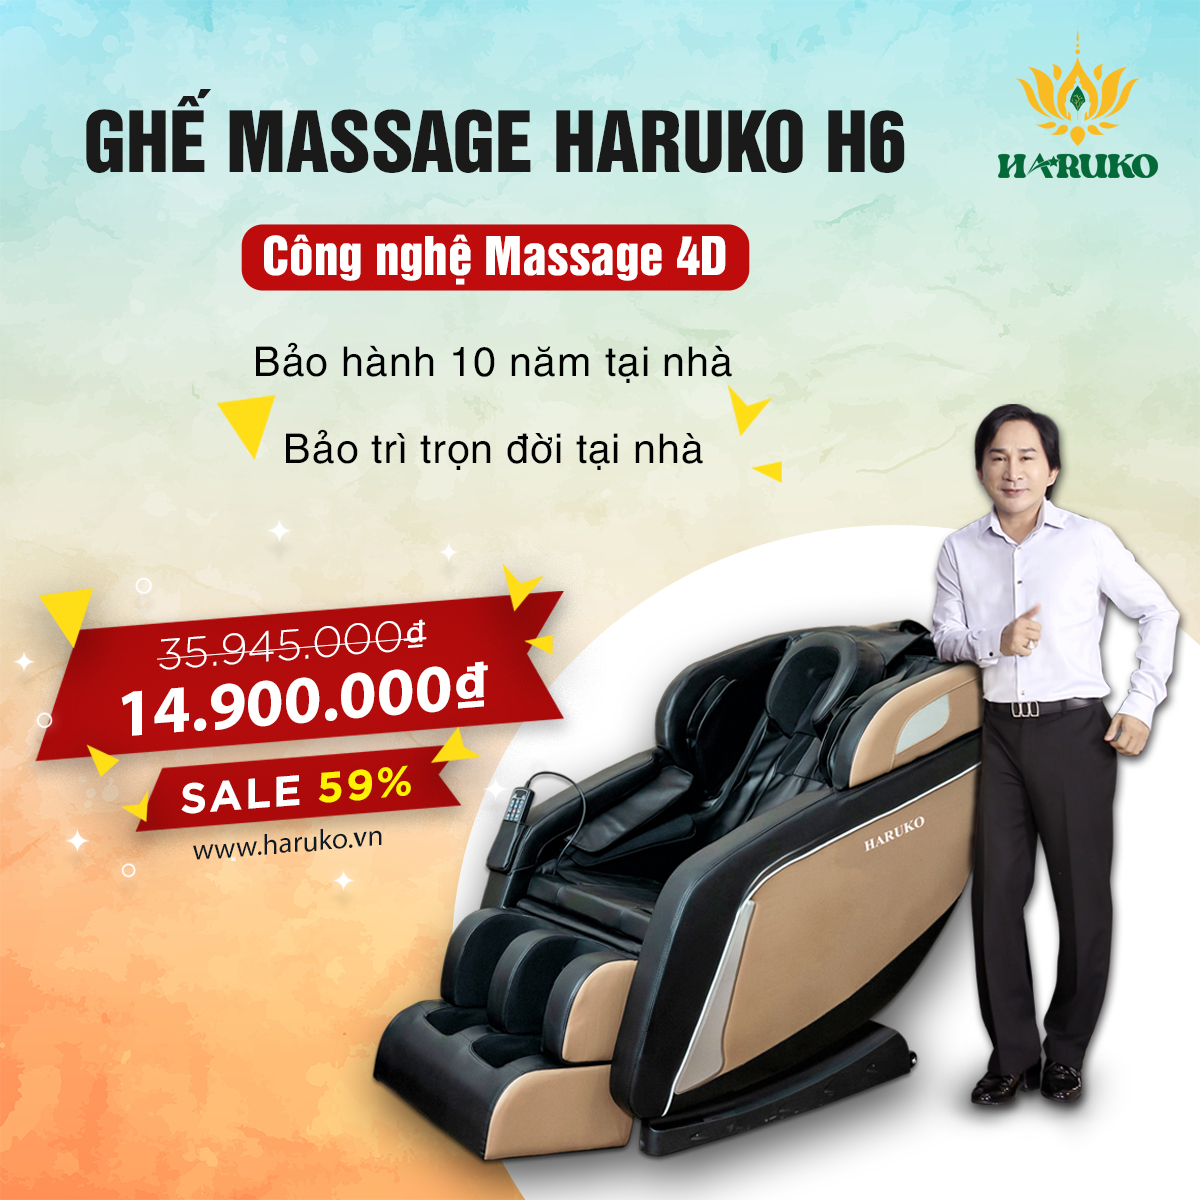 Ghế massage Haruko H6 sở hữu công nghệ massage 4D hiện đại là một trong những sản phẩm được nhiều người tin dùng vì mức giá ưu đãi